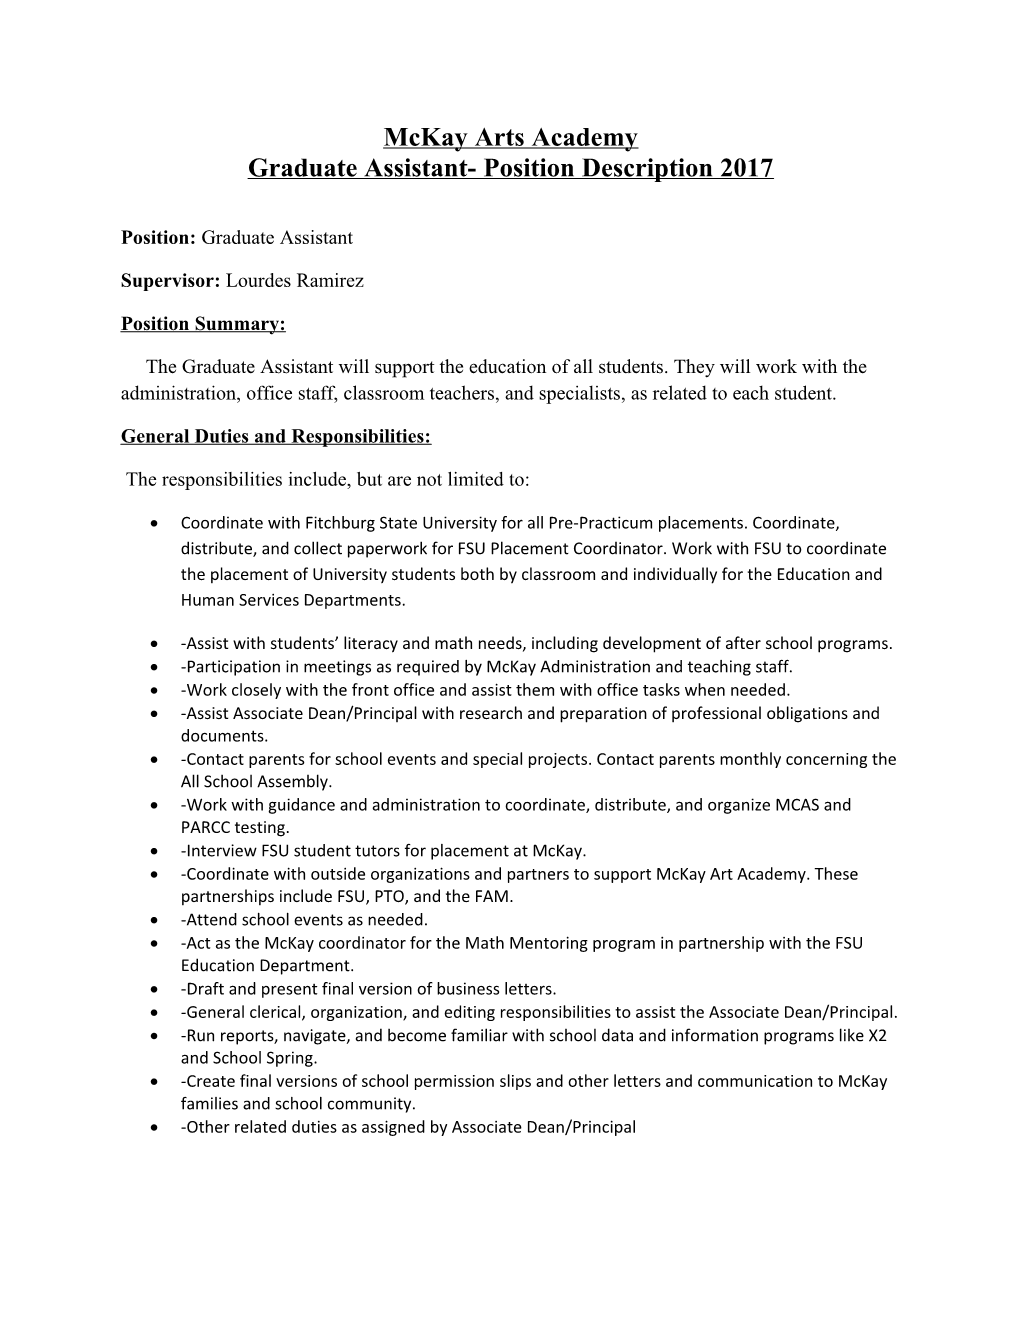 Graduate Assistant- Position Description 2017